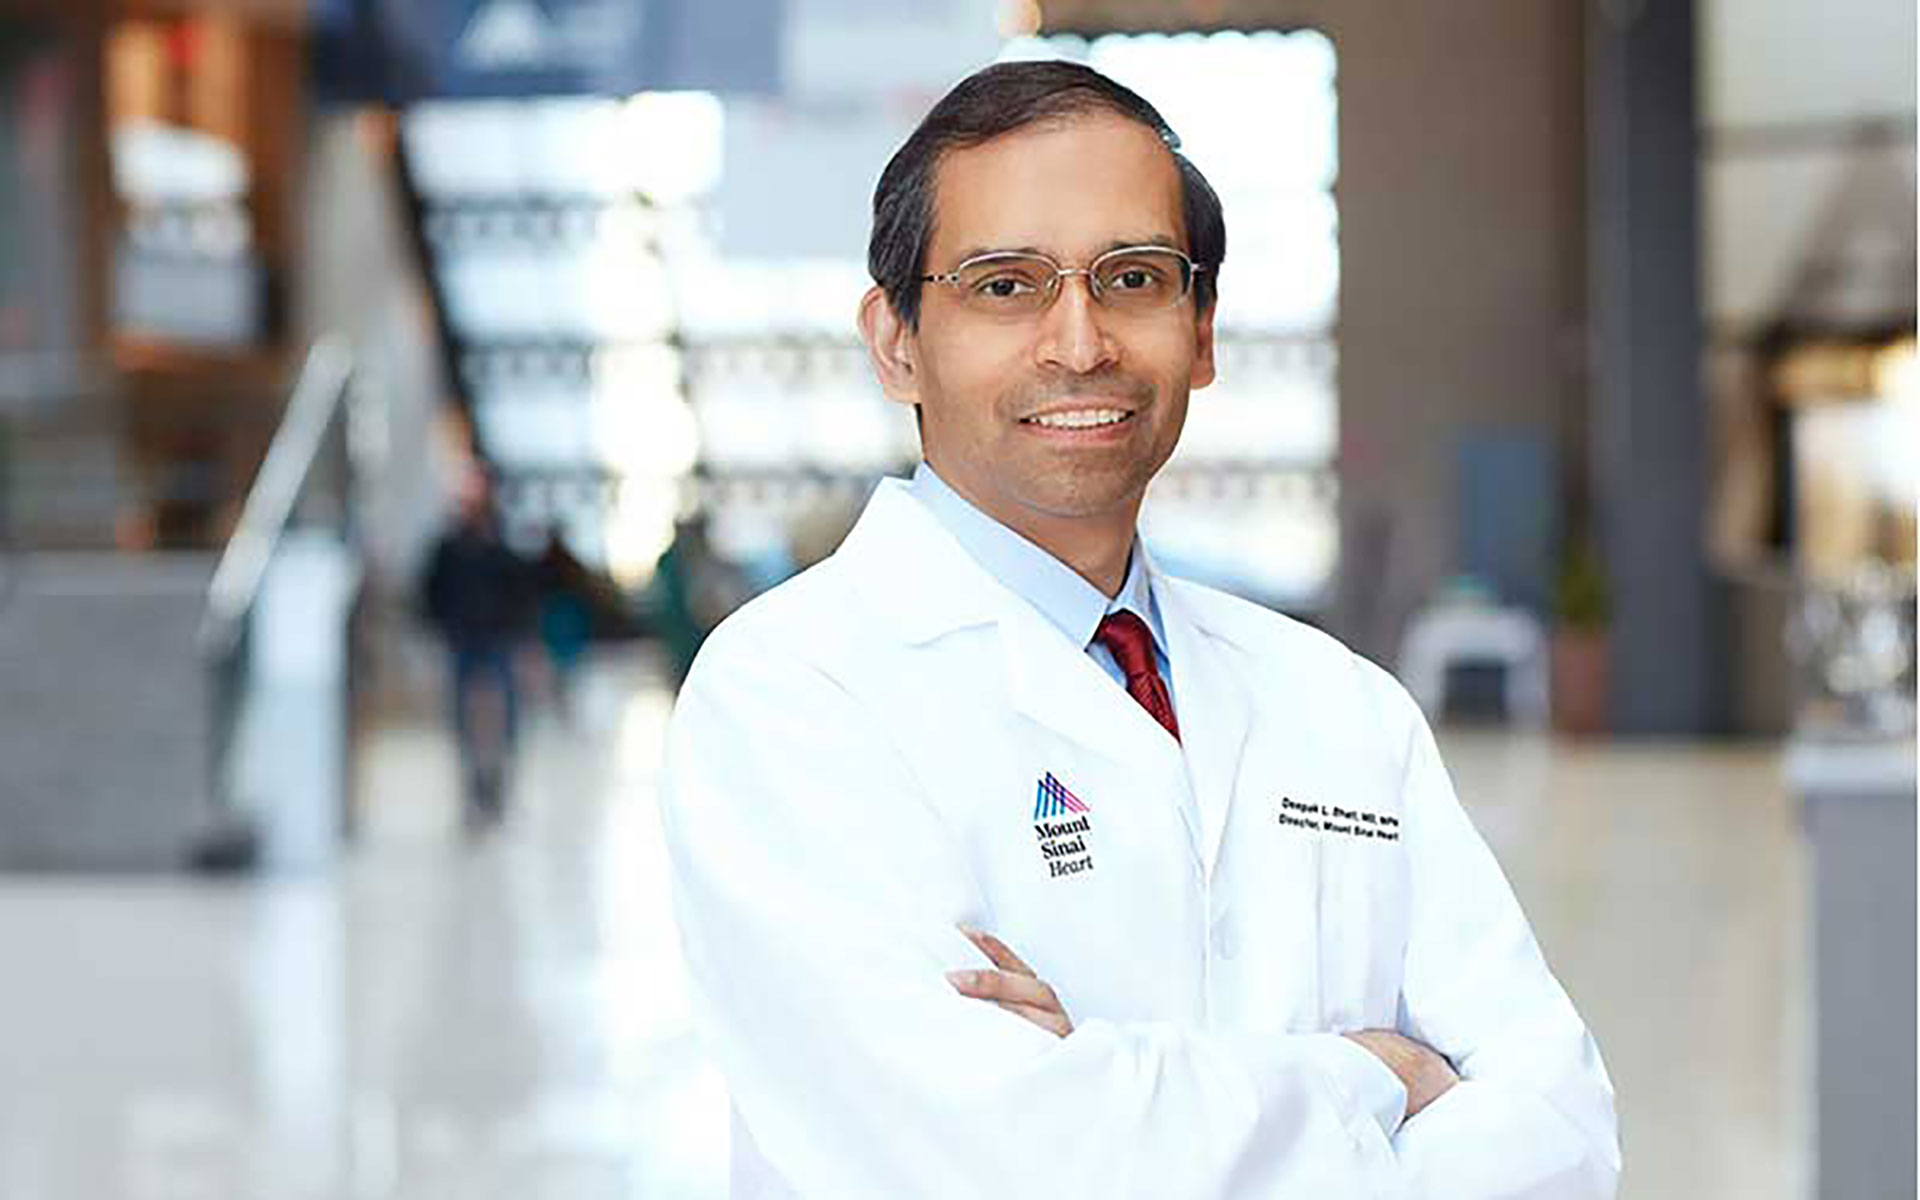 Bhatt es el nuevo director de Mount Sinai Heart. Dirige las áreas de educación, investigación y trabajo cardiovascular clínico de la Escuela de Medicina Icahn en Mount Sinai y el Sistema de Salud de Mount Sinai
(Mountsinai)